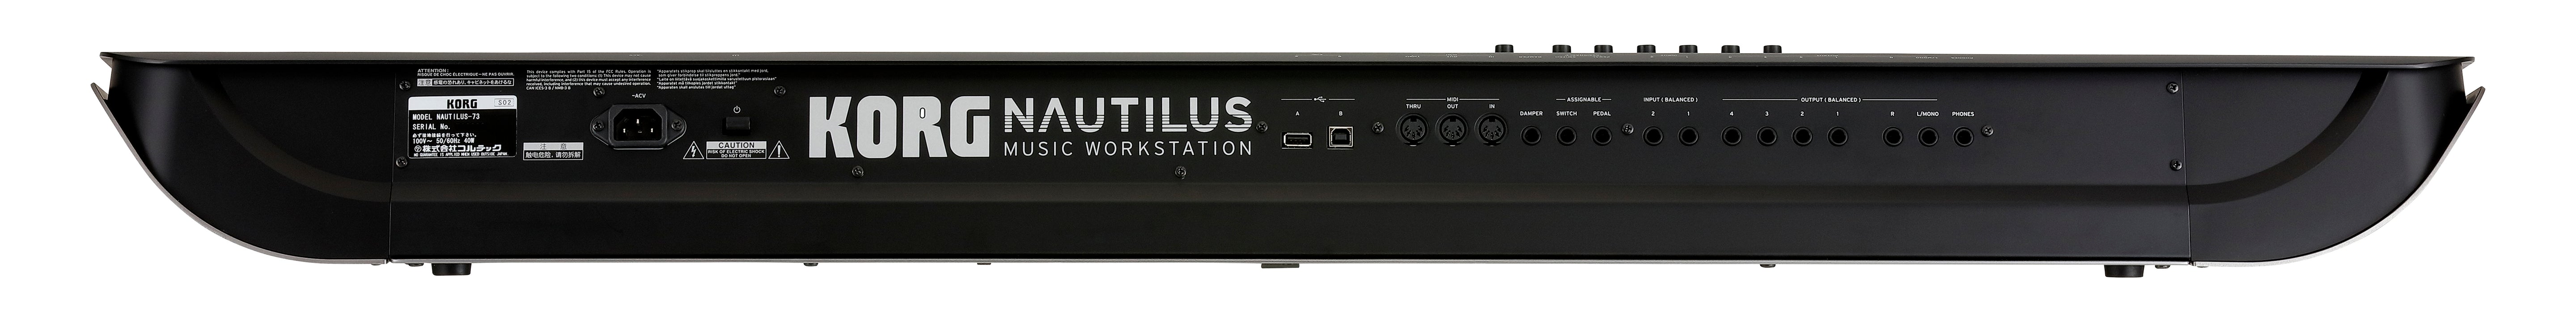 NAUTILUS Music Workstation - 73-Key (Certified Refurbished)